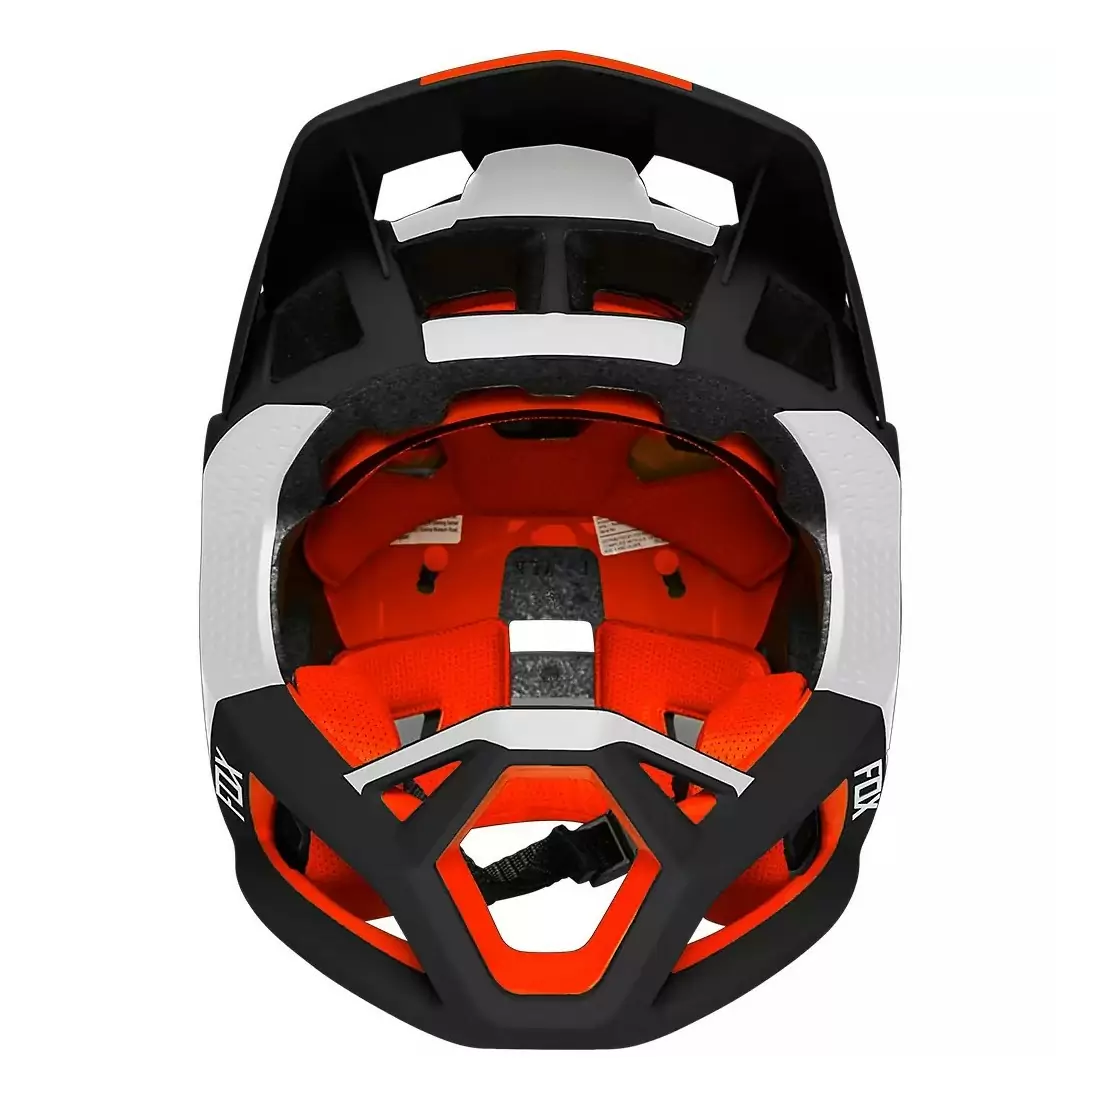 Proframe MTB Fullface Helmet Blocked Black/White Size L (58-61cm) #3